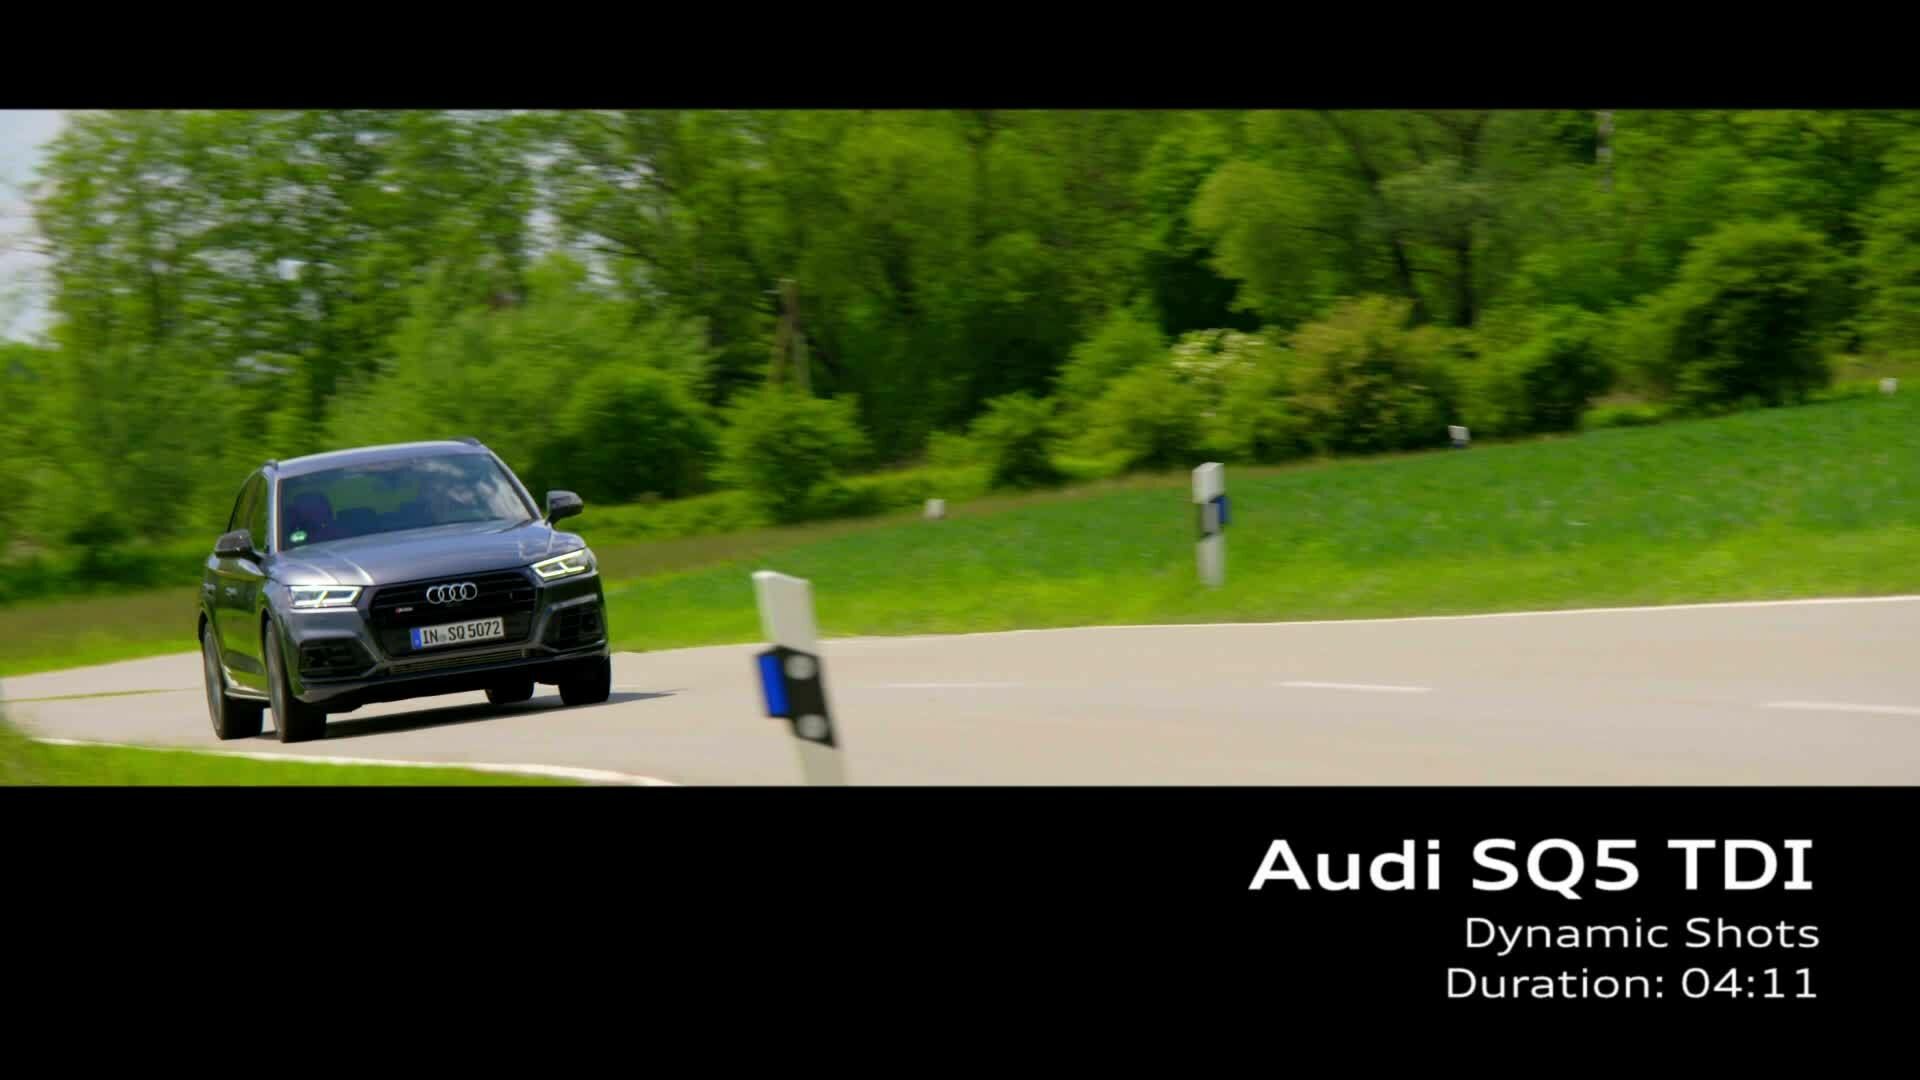 Audi SQ5 TDI (Footage)